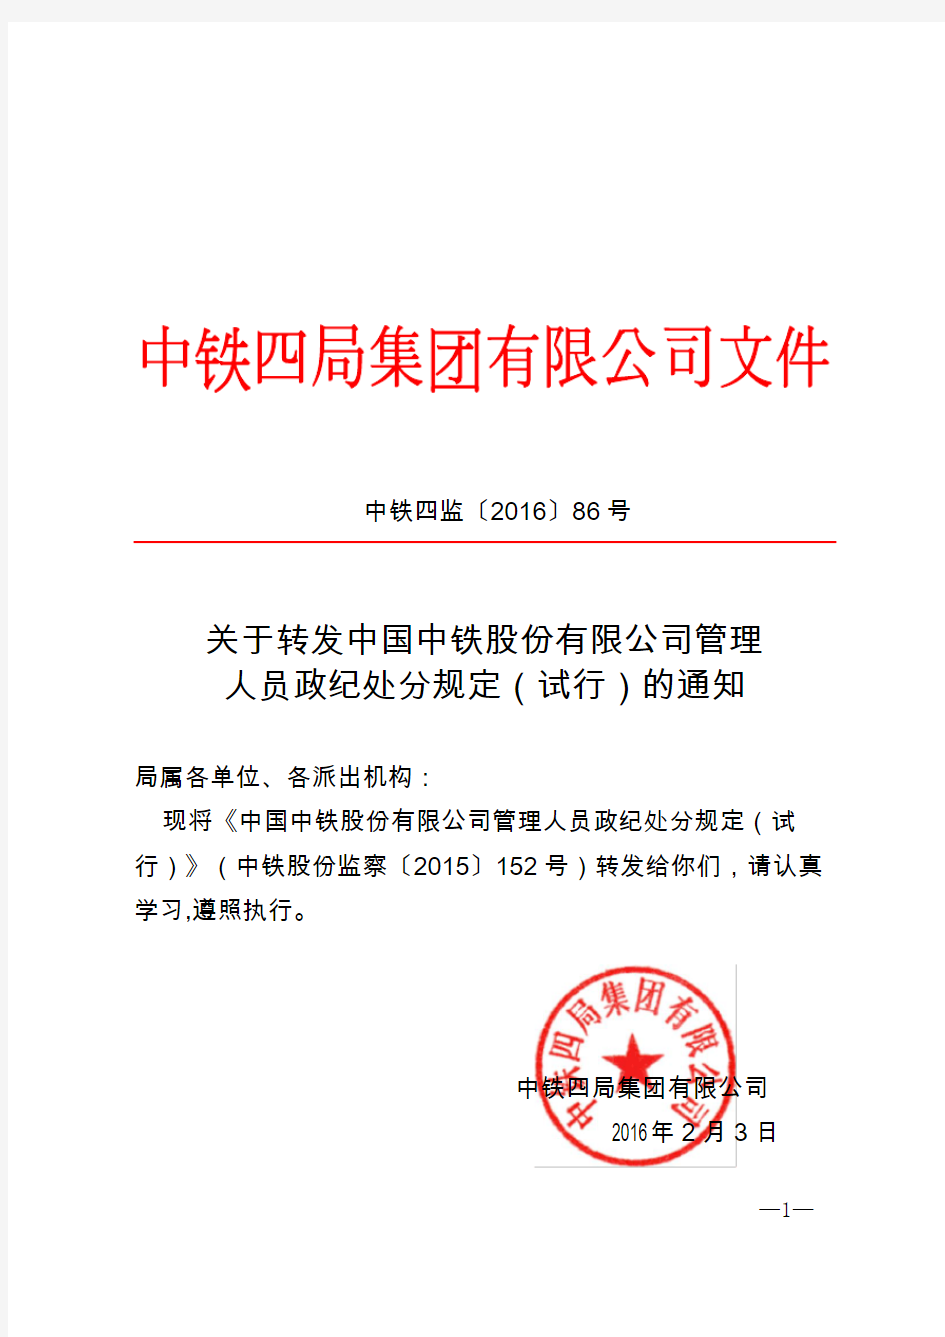 关于转发《中国中铁股份有限公司管理人员政纪处分规定》(试行)的通知